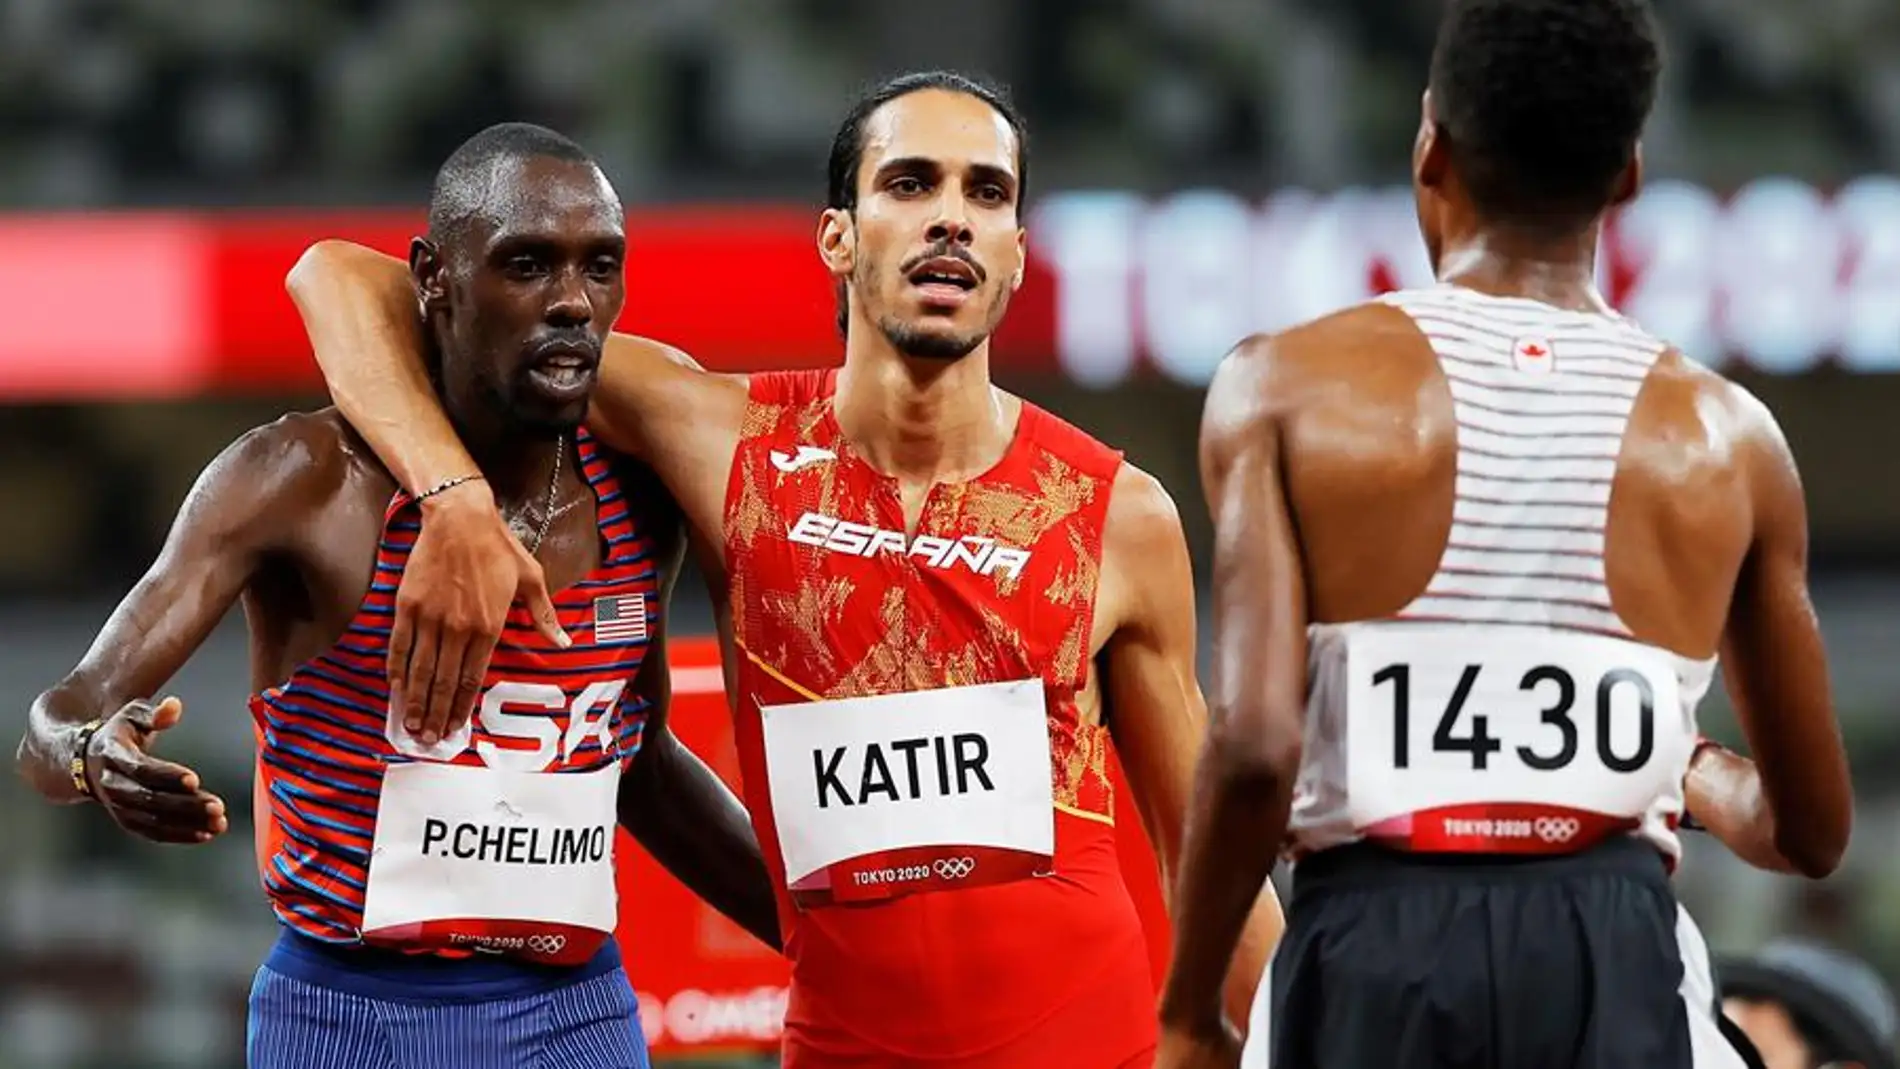 ¿Quién es Mohamed Katir? Los orígenes y el lado más personal del atleta